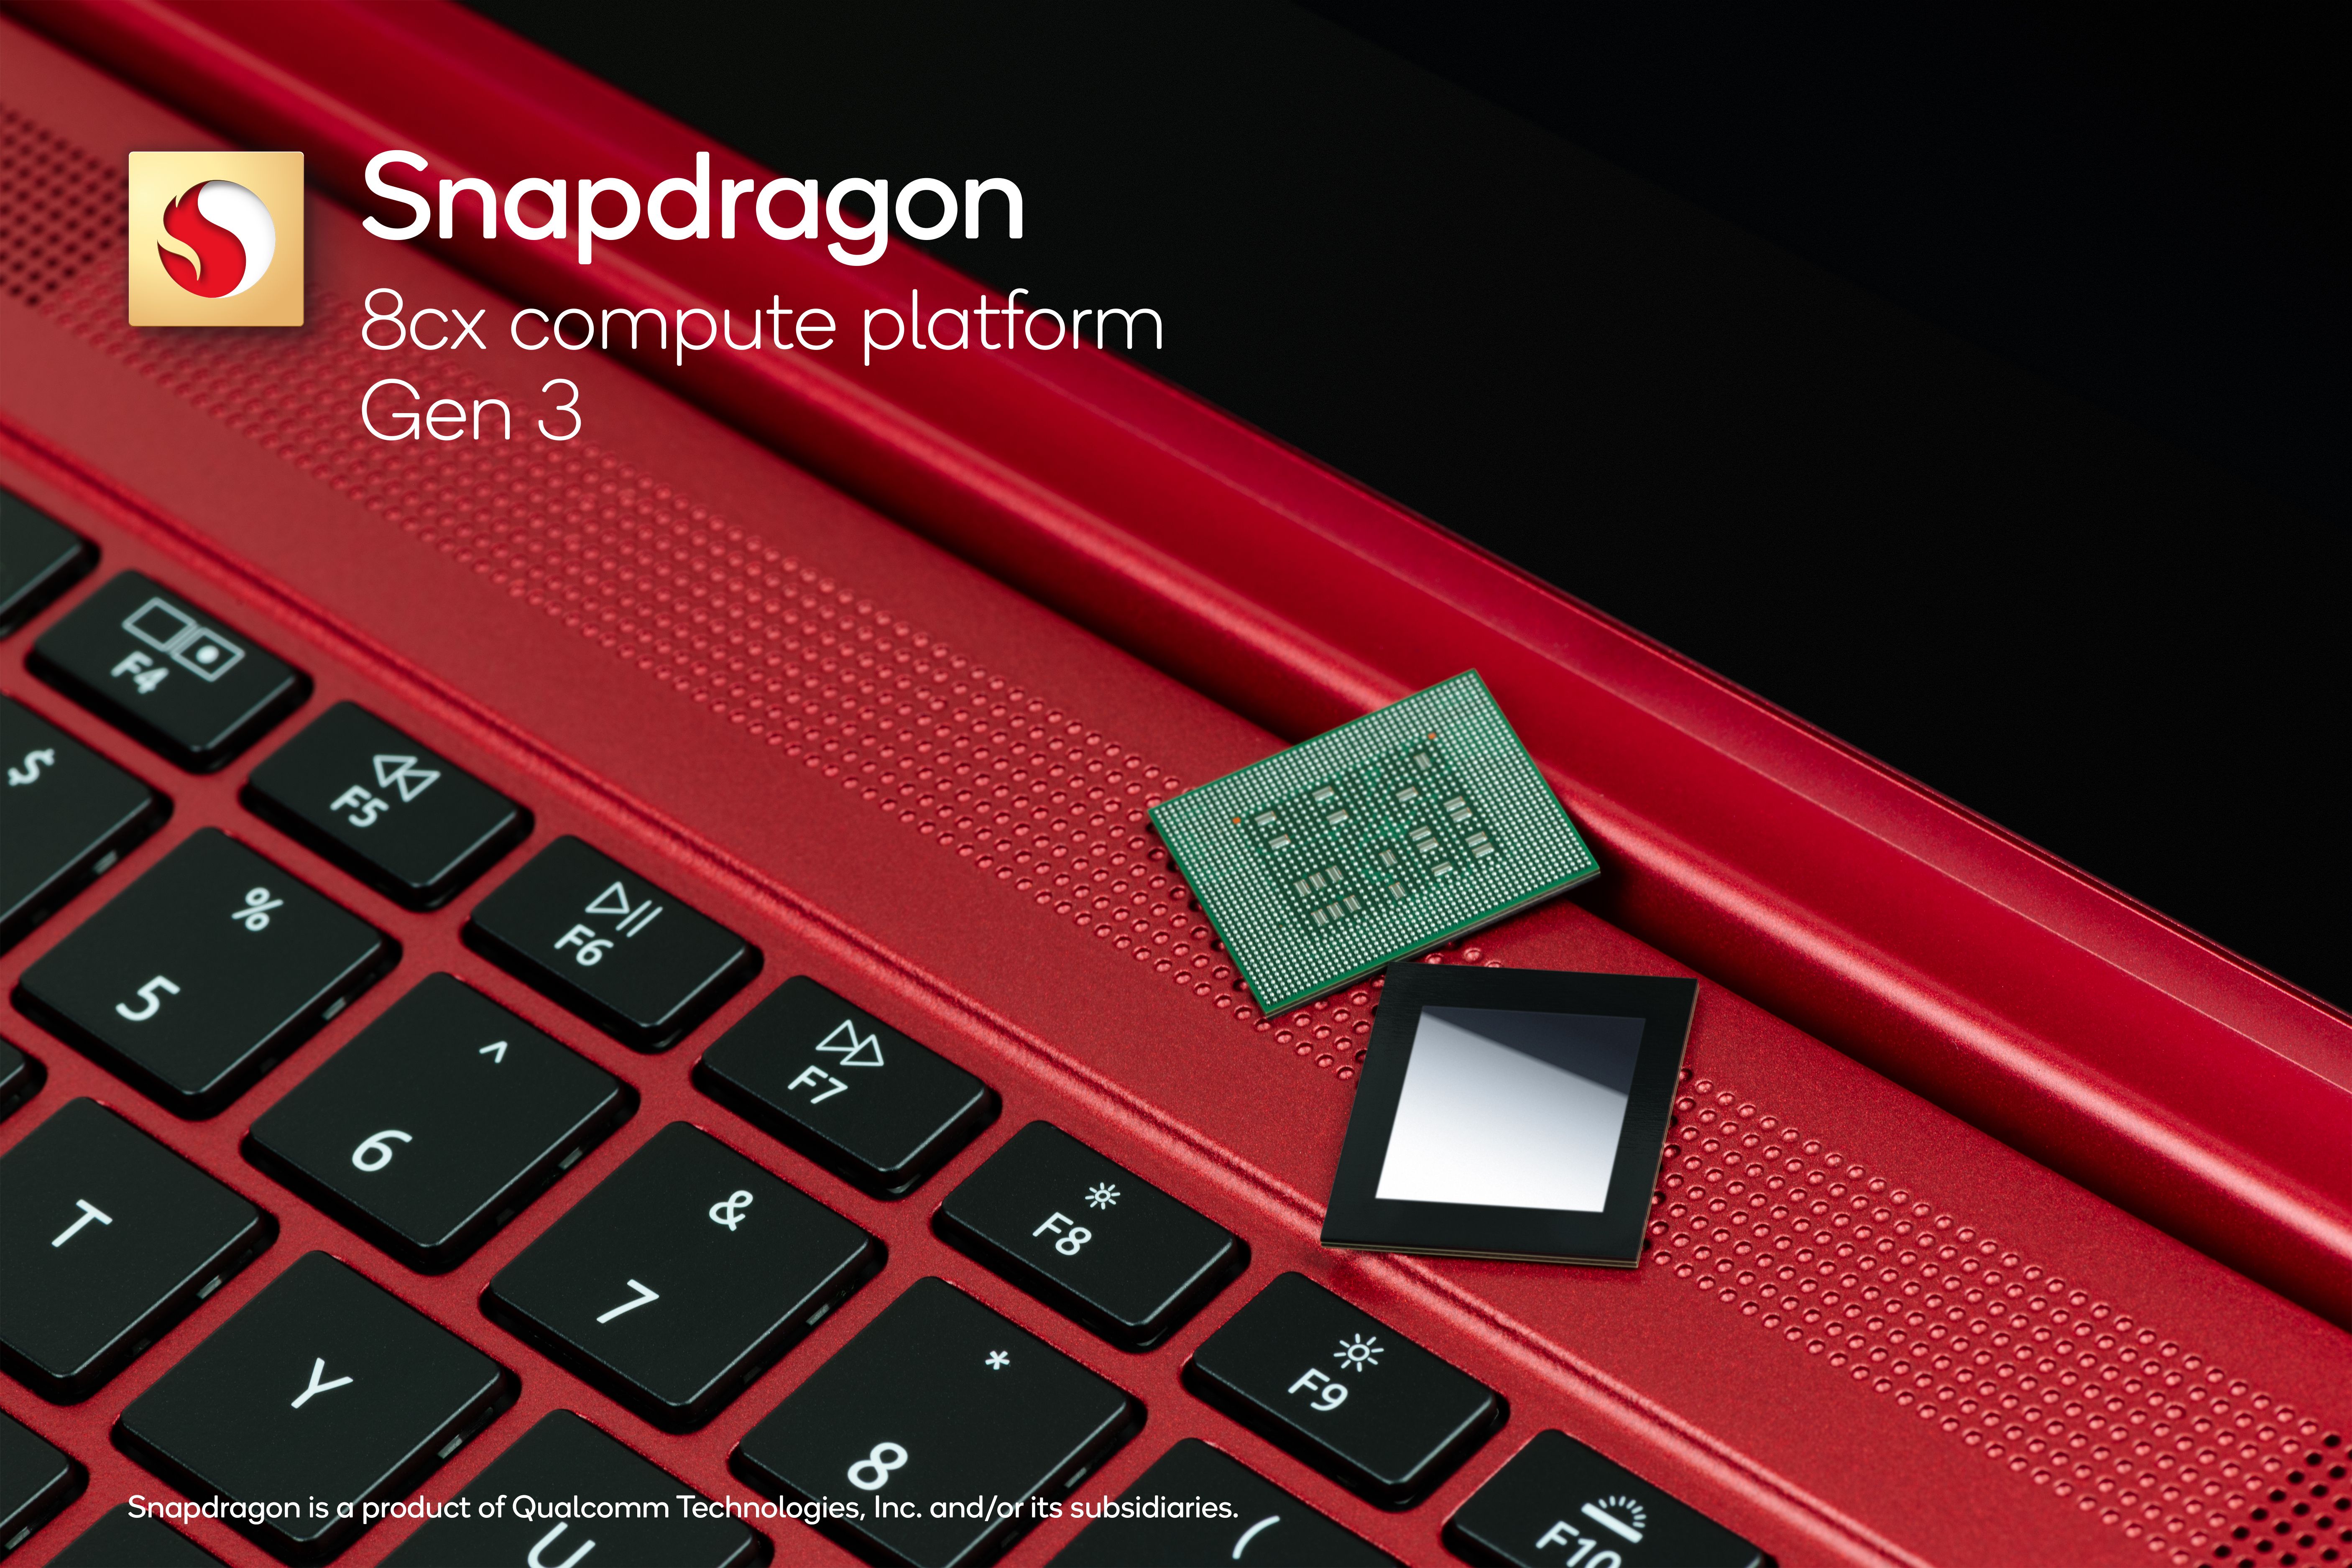 Qualcomm's Snapdragon 8cx gen 3 compute platform chip